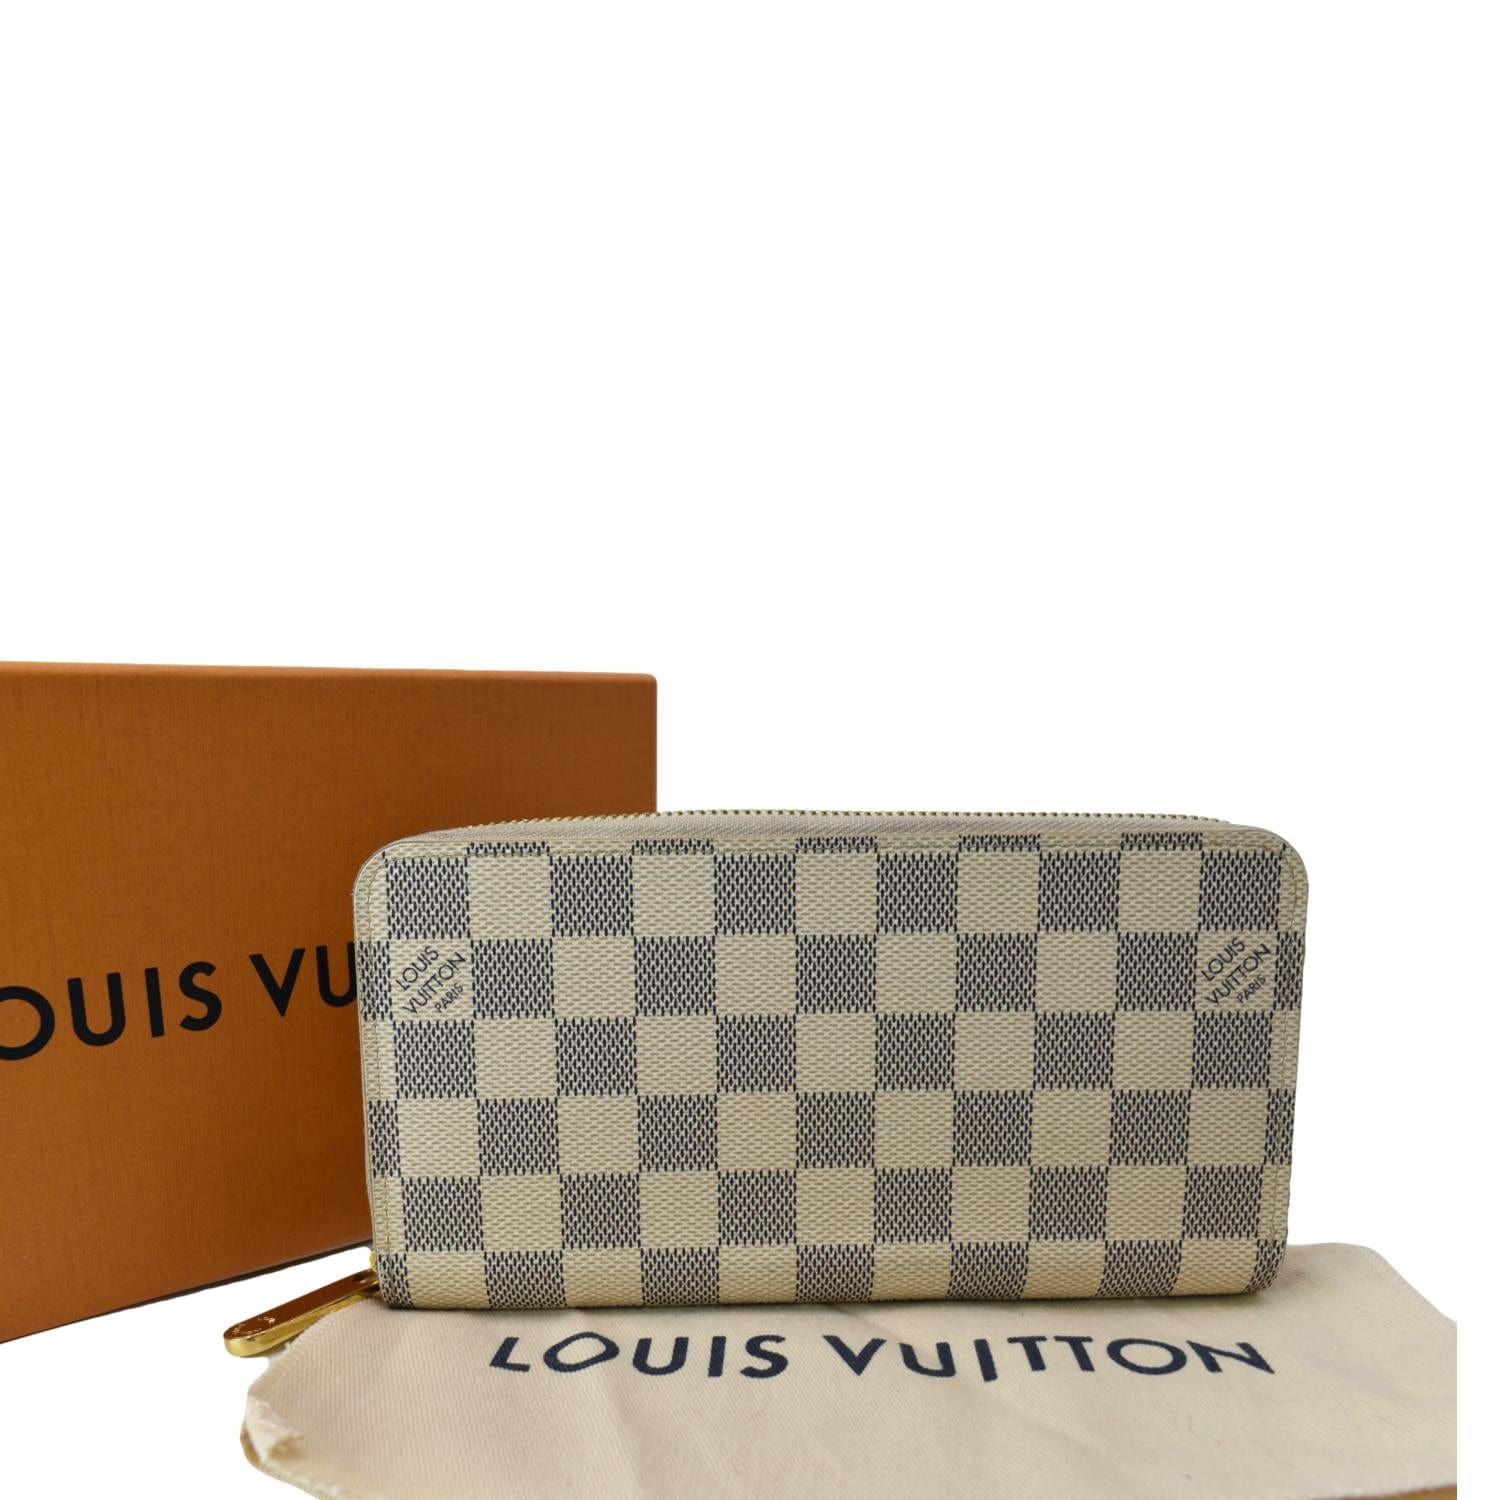 Louis Vuitton Damier Azur Multiple Wallet 1214lv31 